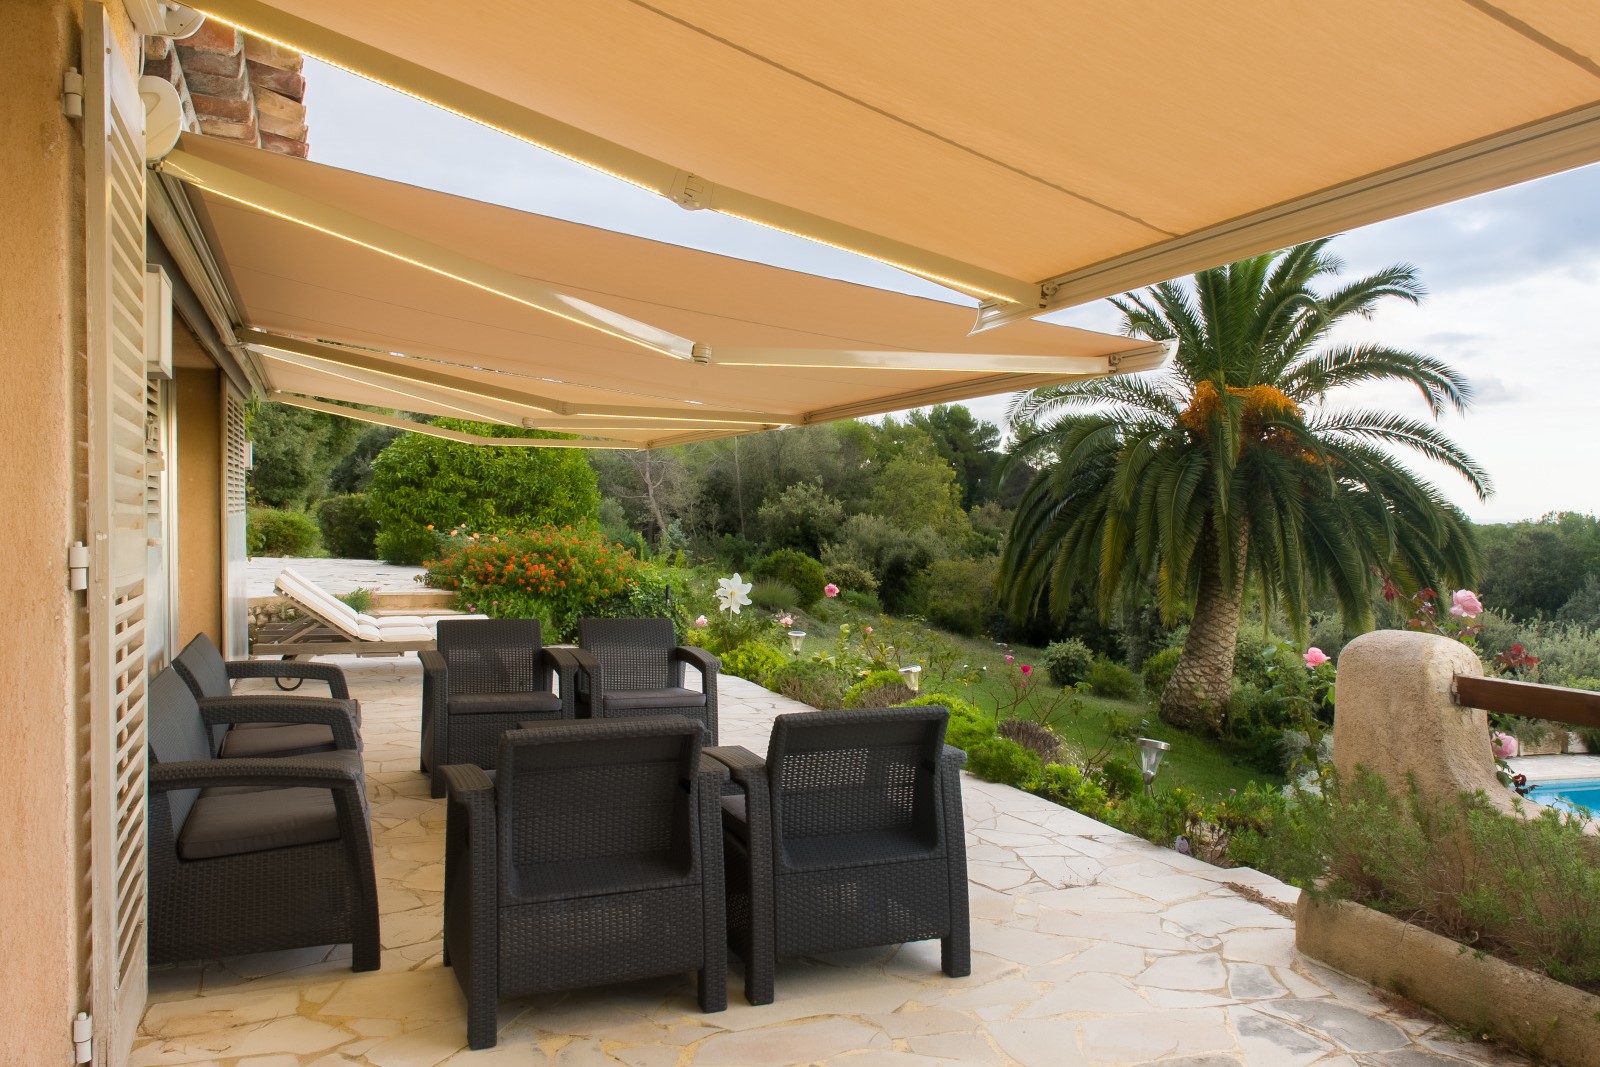 Le store banne pour aménager la terrasse de votre maison provençale - Komilfo